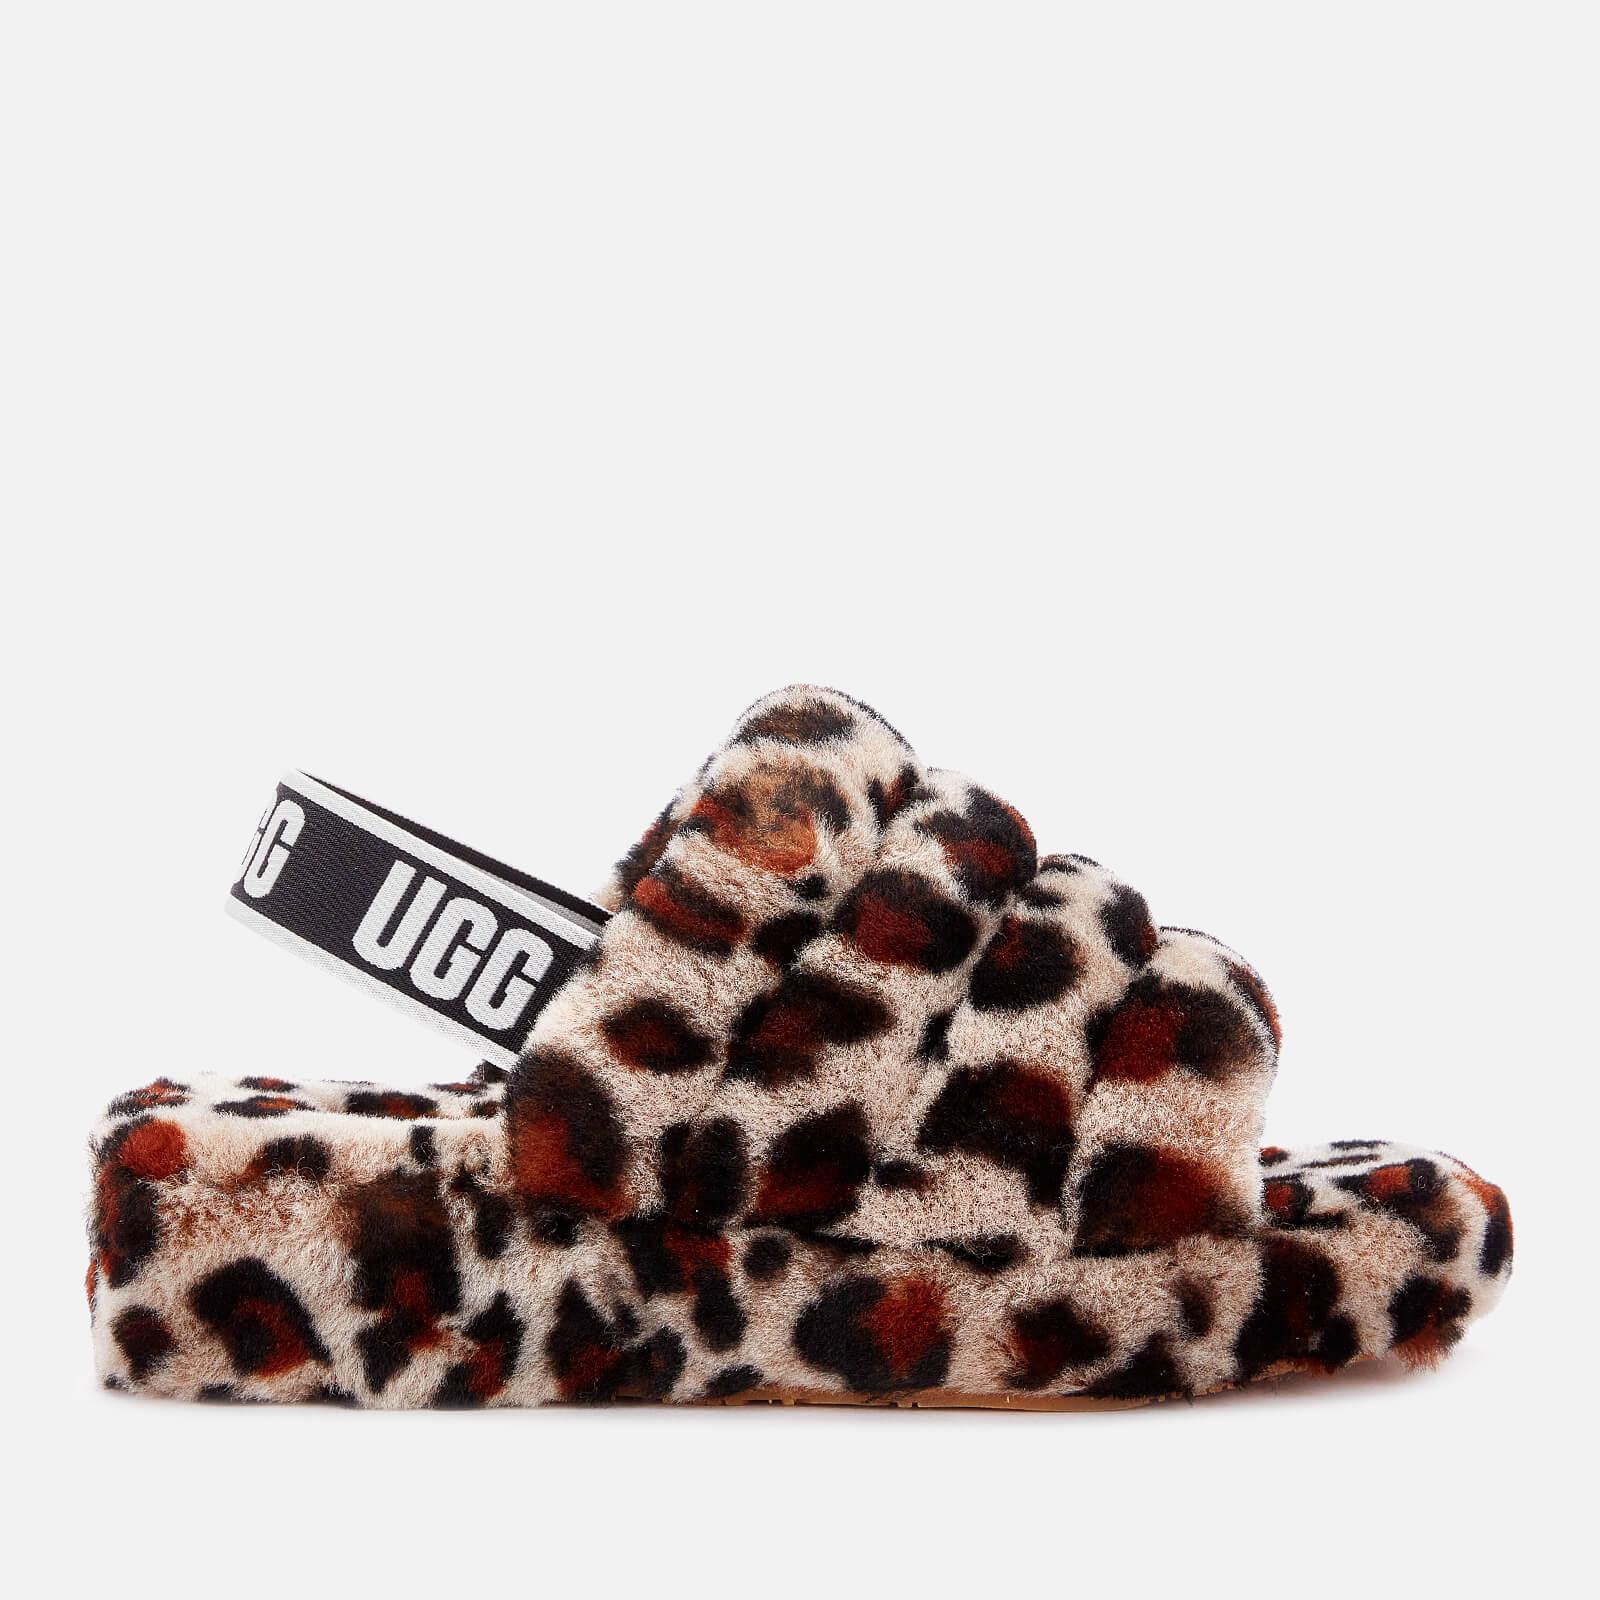 ugg sandals leopard,OFF 60%,www.gonardsecurity.in